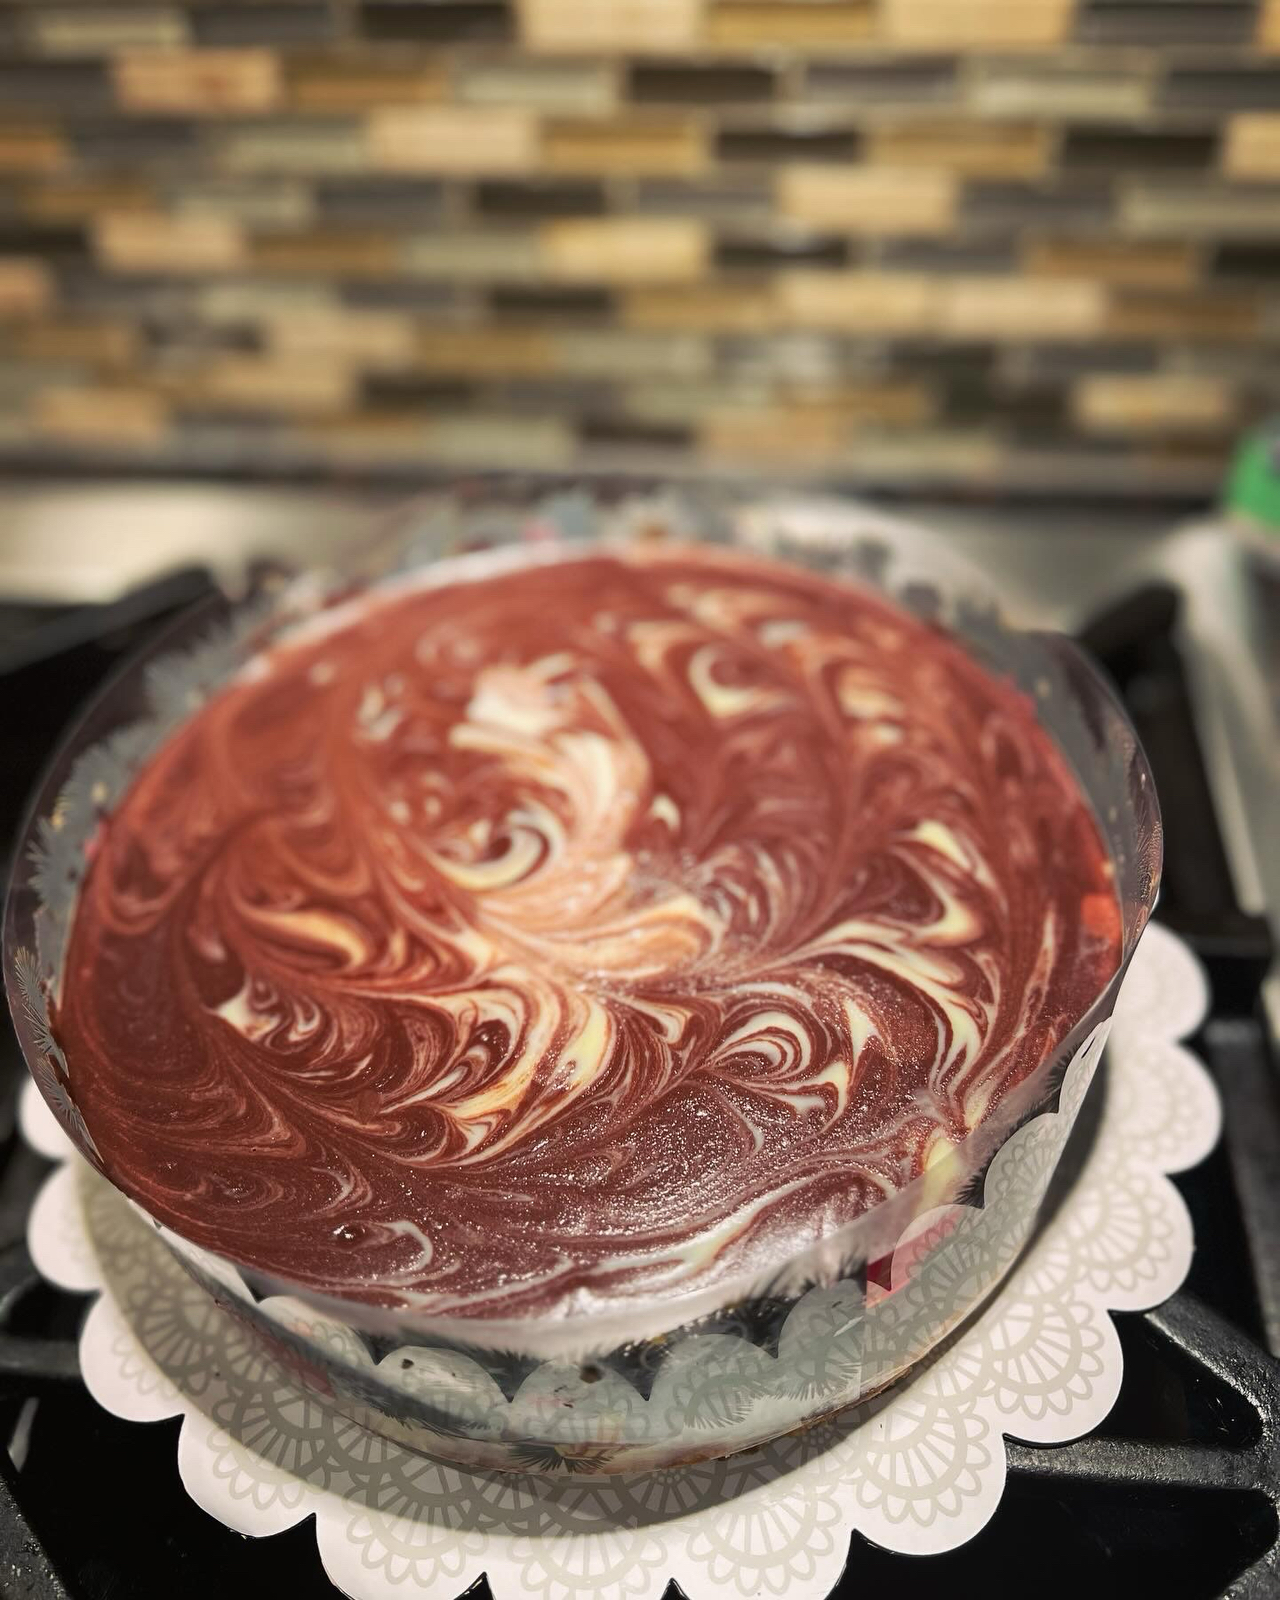 藏不住了 双重口感 全程搅拌搅拌就能成功的巧克力熔岩巴斯克蛋糕！